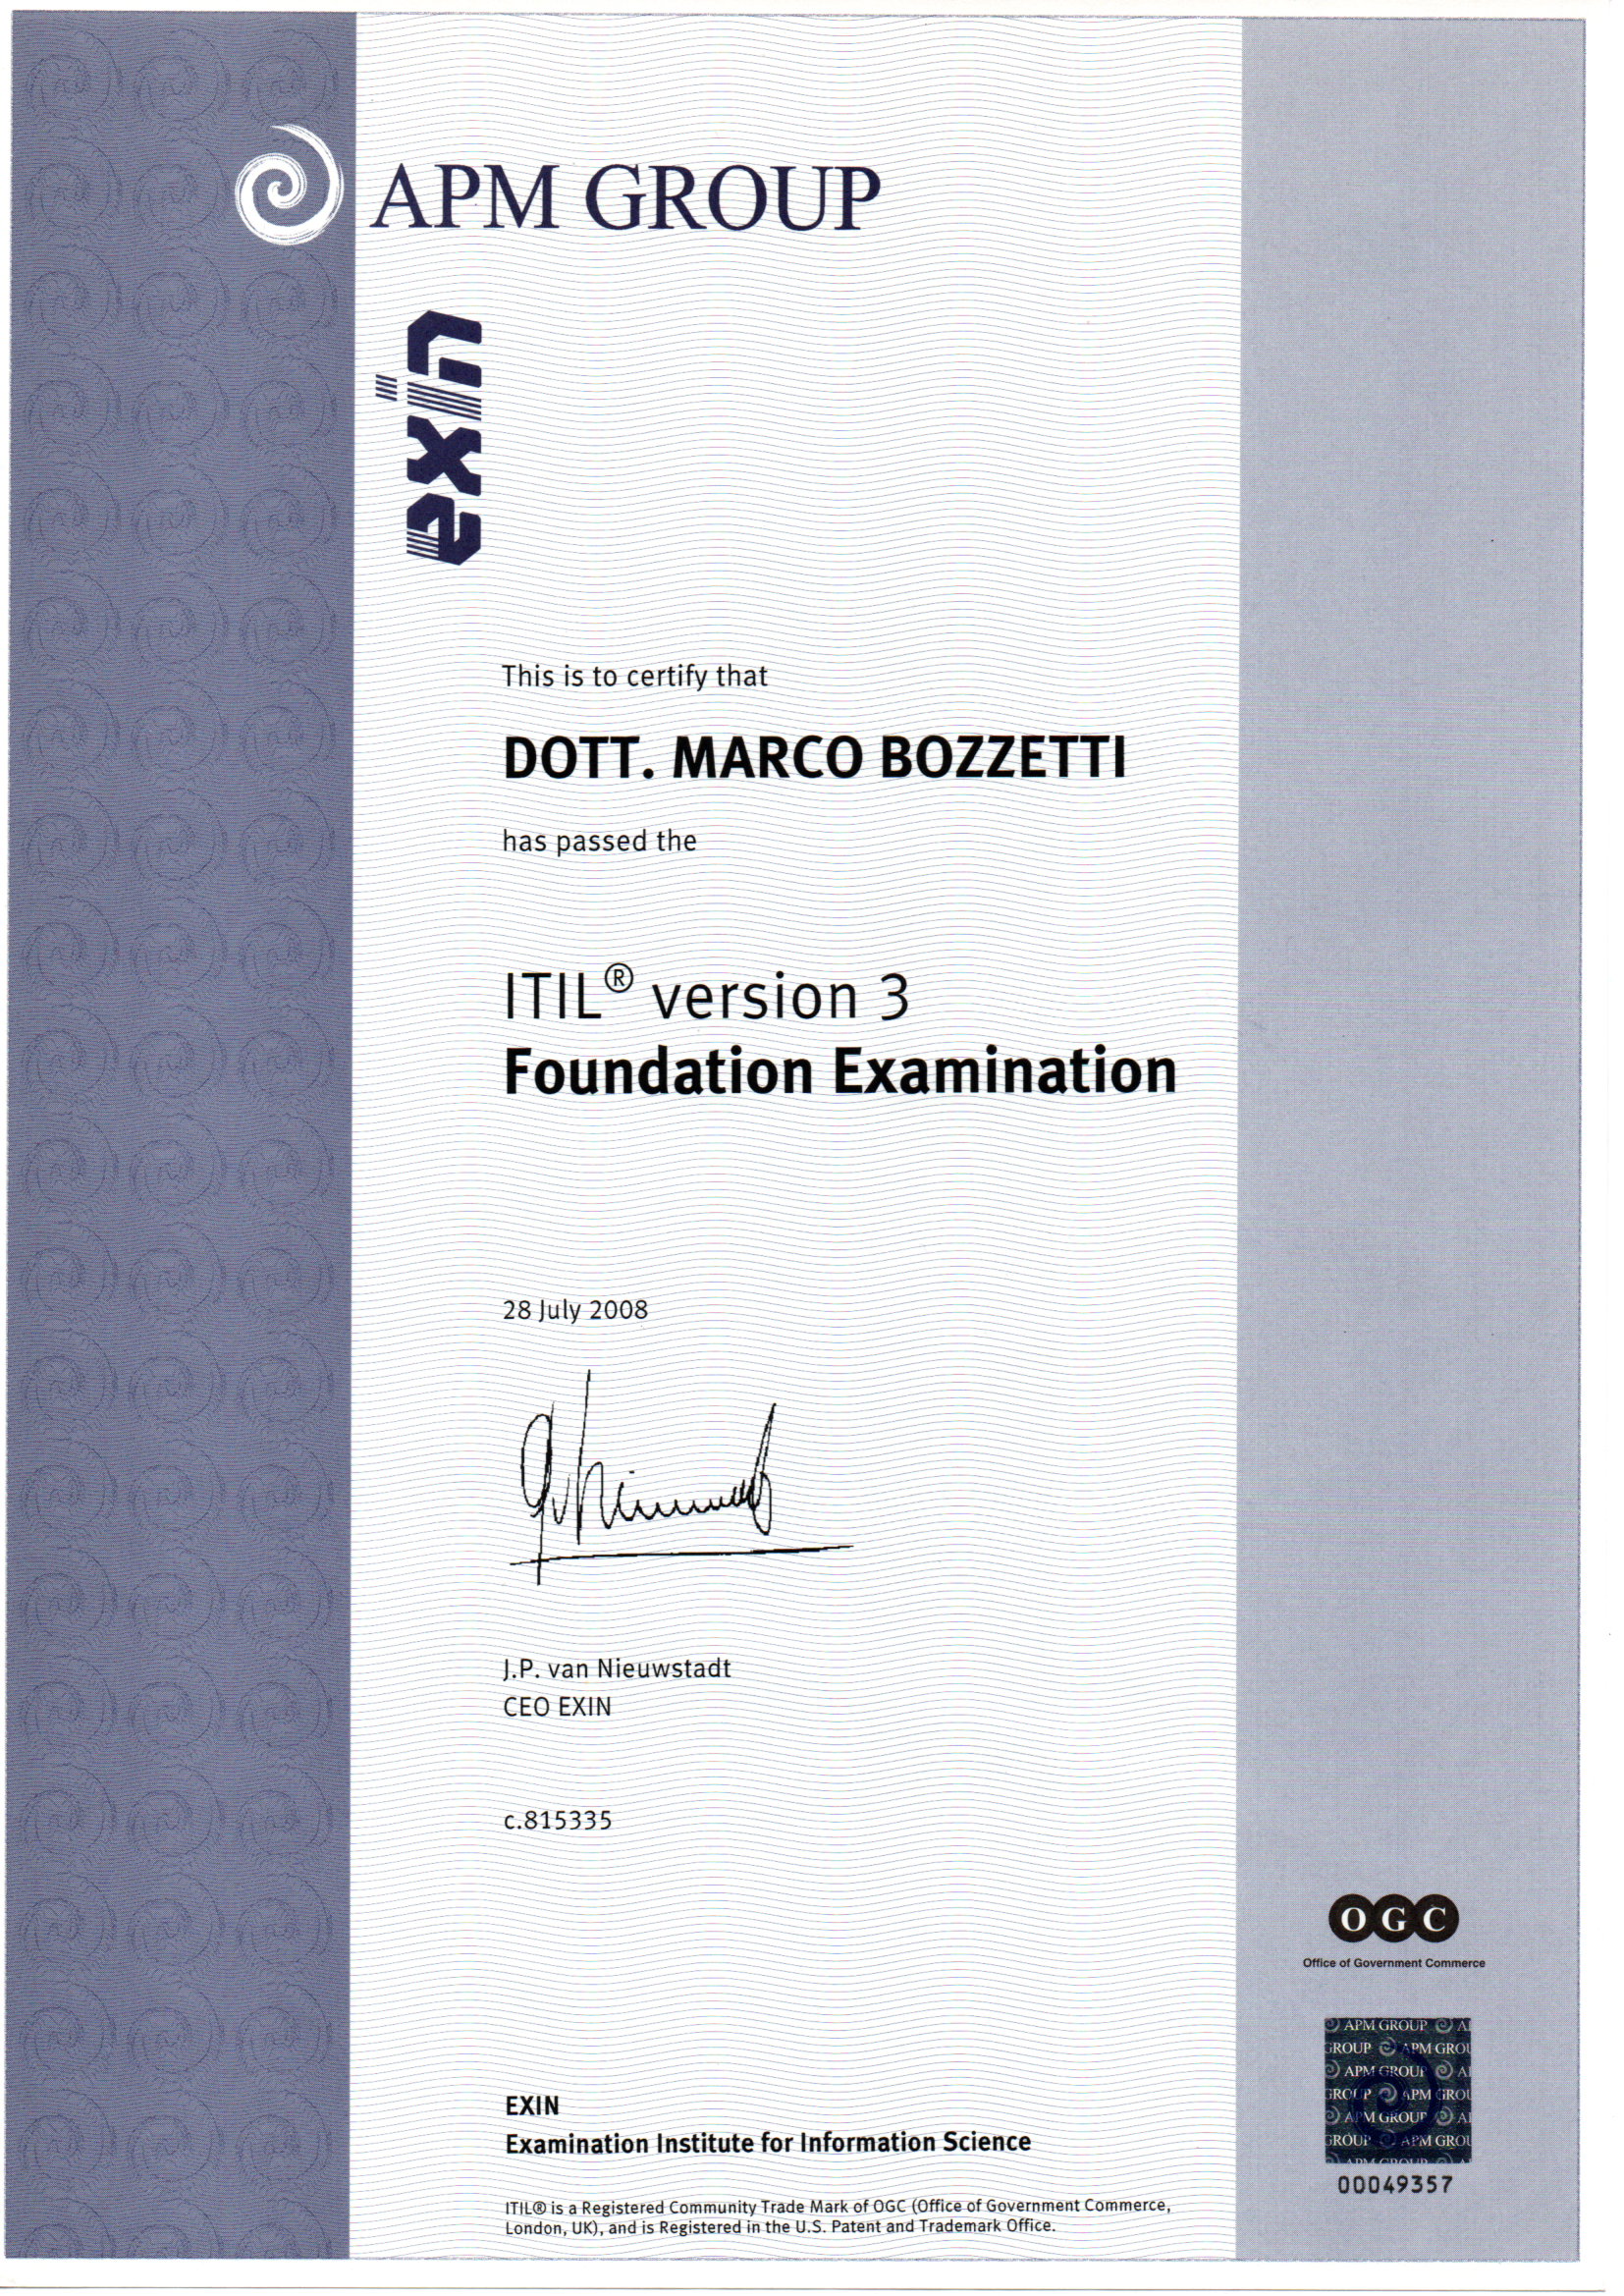 Cerificato ITIL v3 Foudation x M Bozzetti 28 7 2008